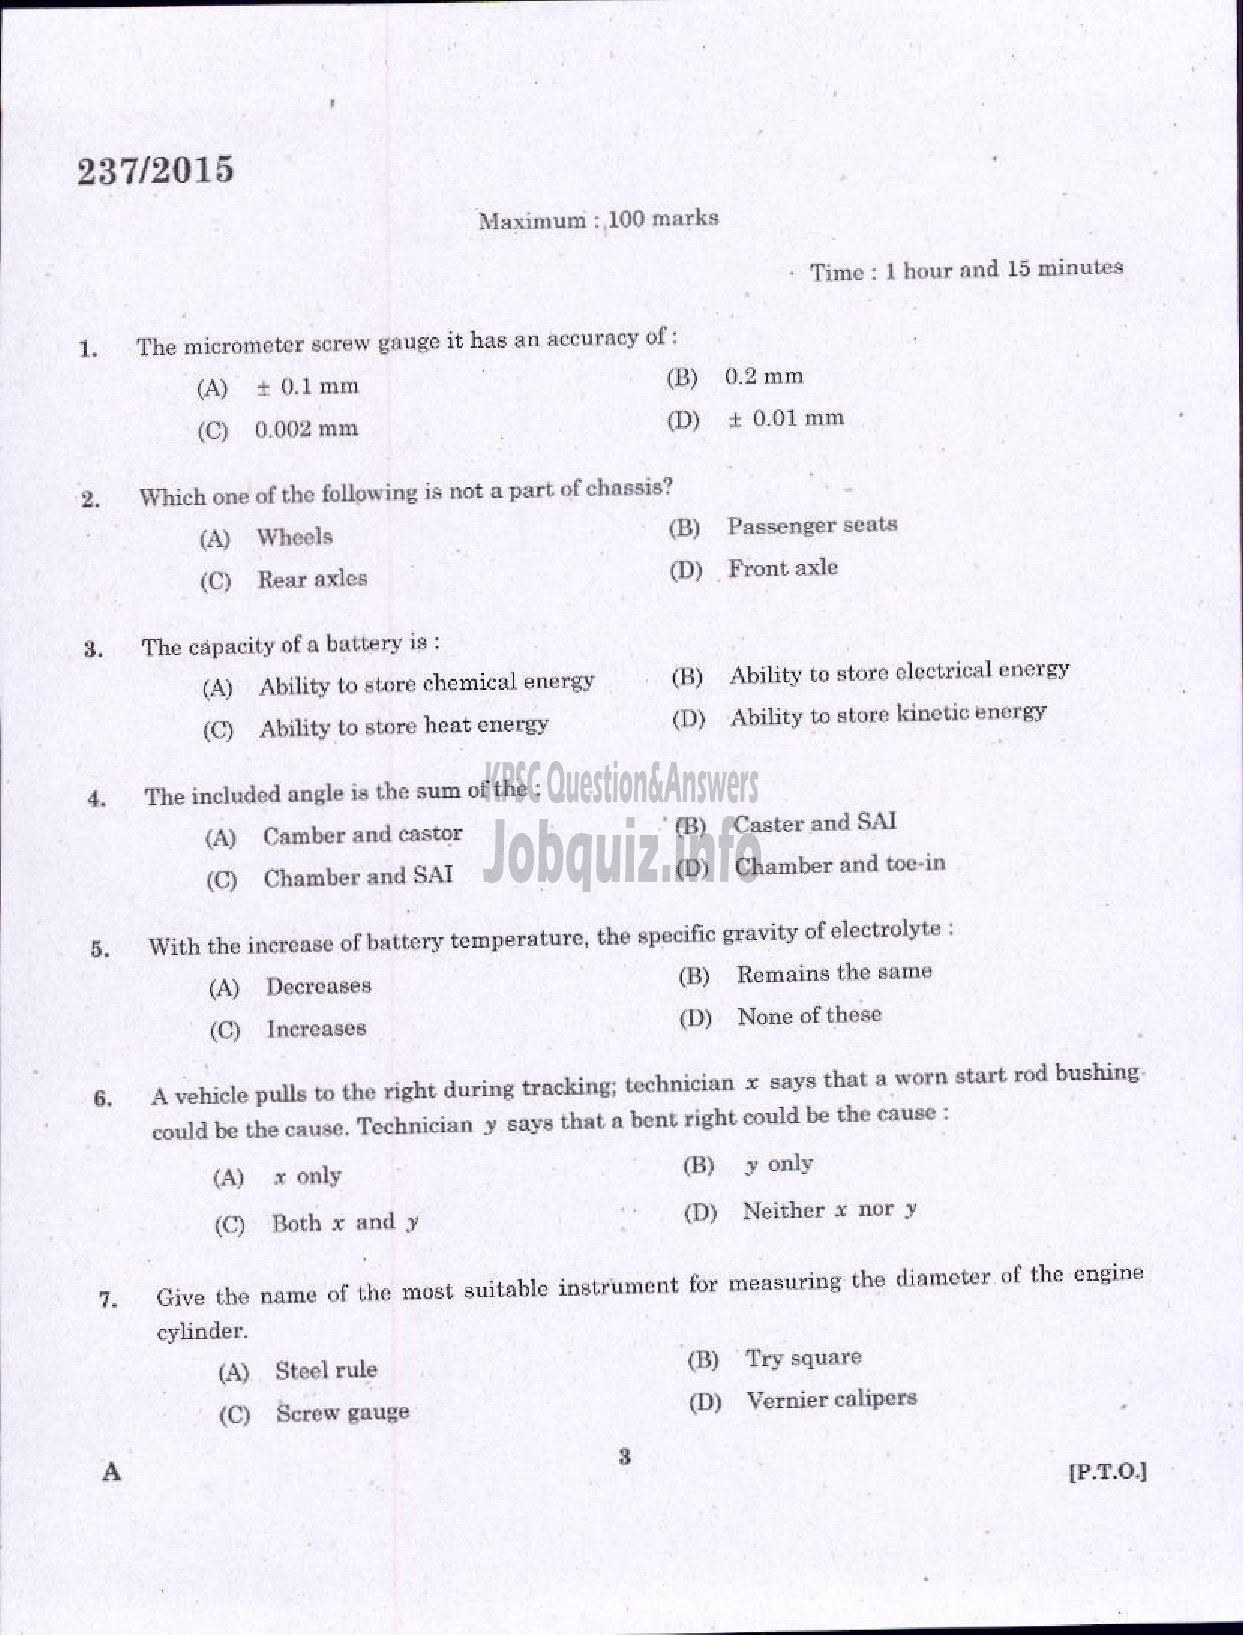 Kerala PSC Question Paper - MECHANIC GR II KSRTC-1